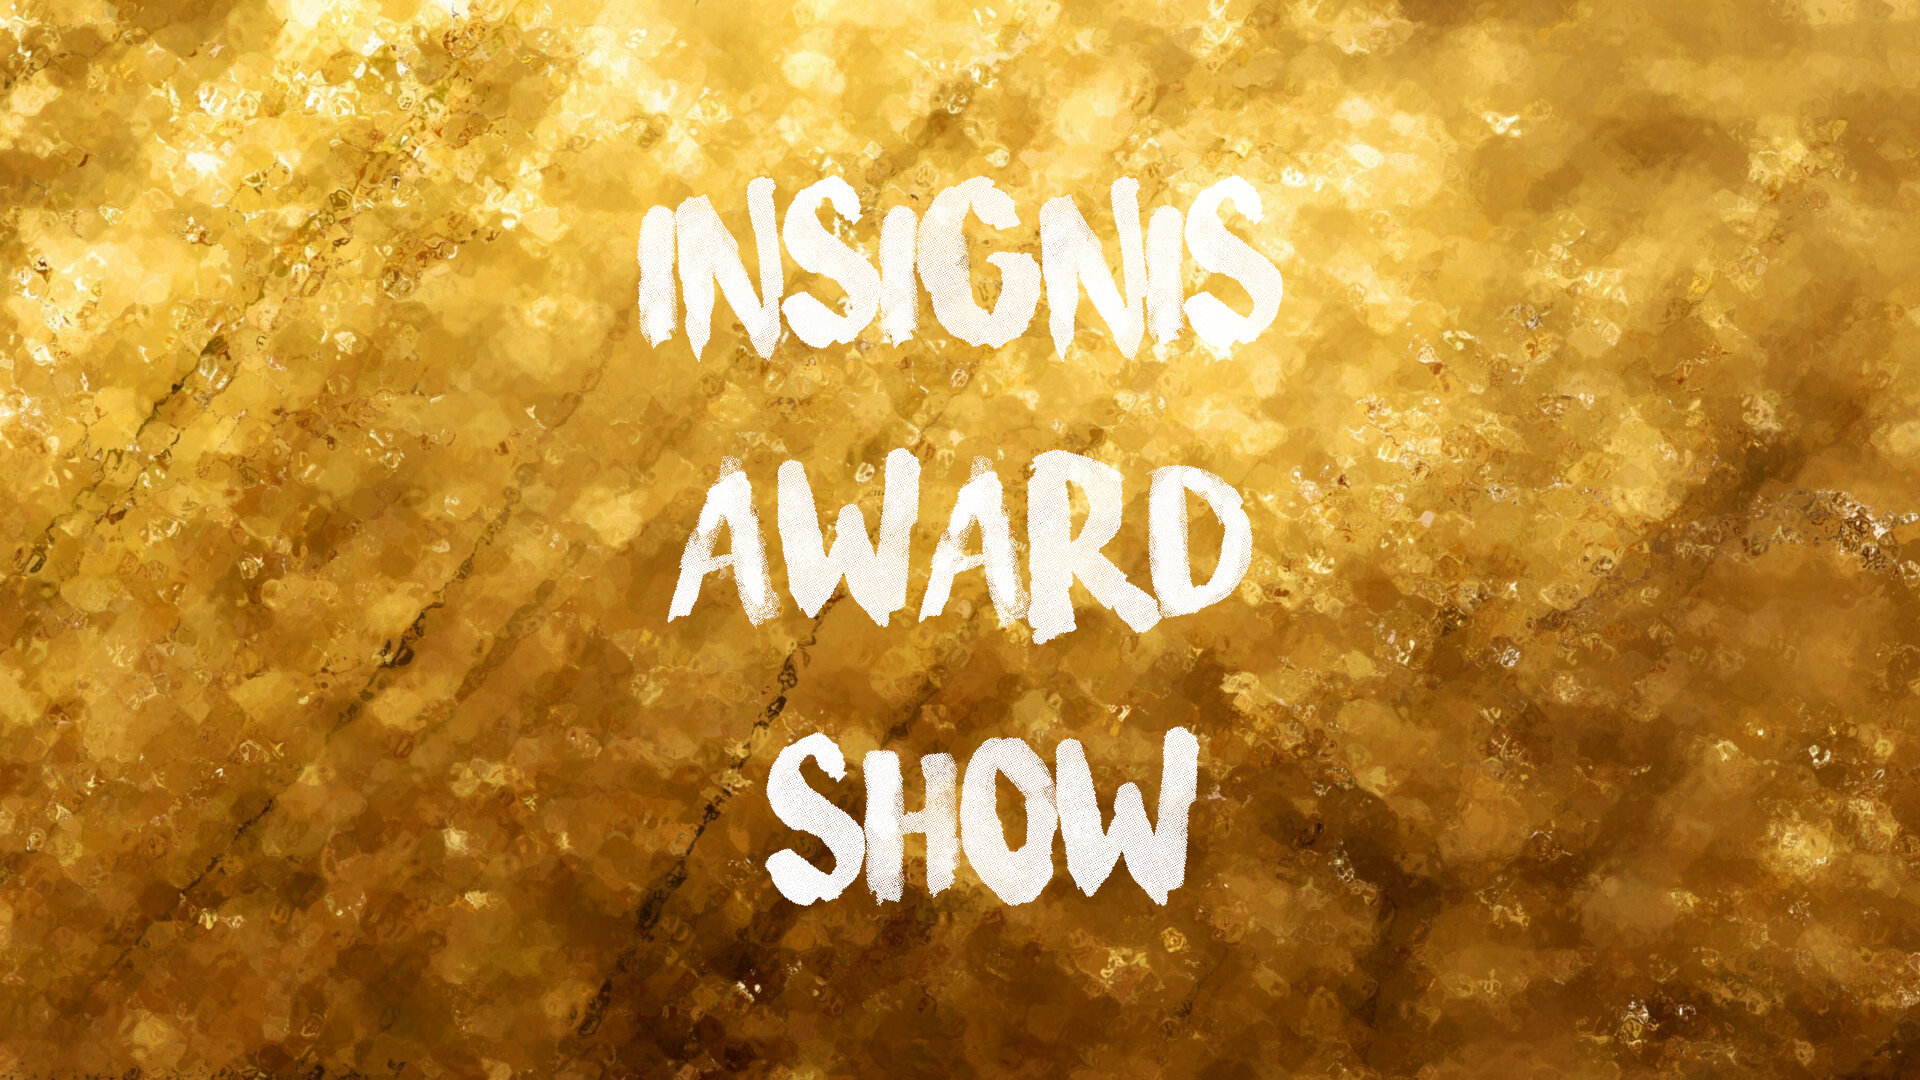 Award Show (2020)